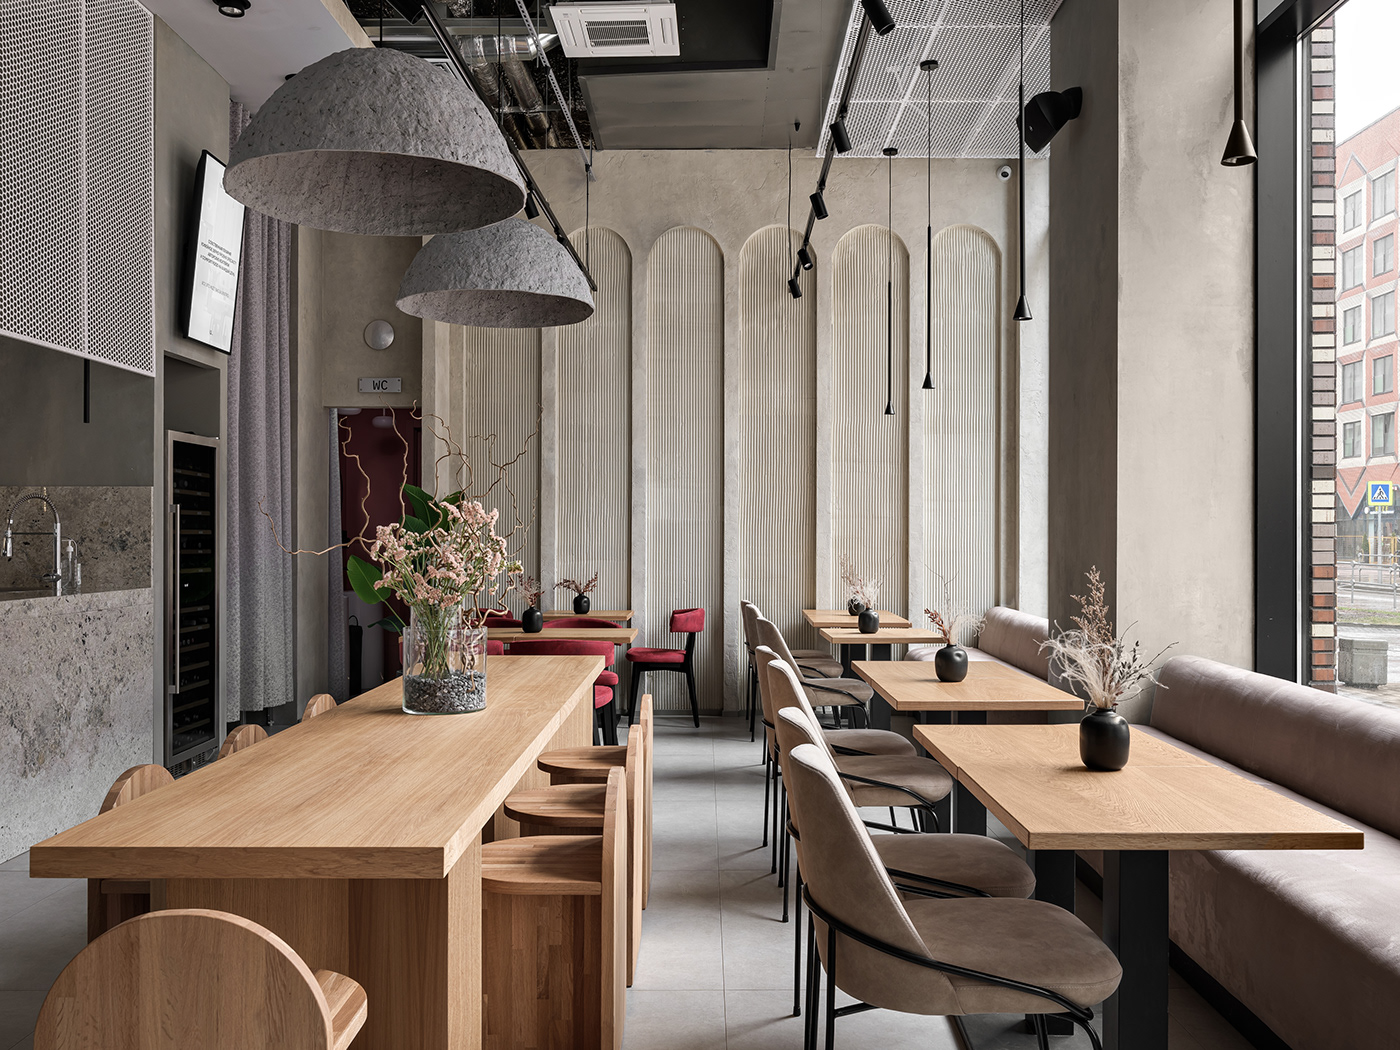 architecture bar bistro cafe cozy interior design  modern restaurant warm wooden